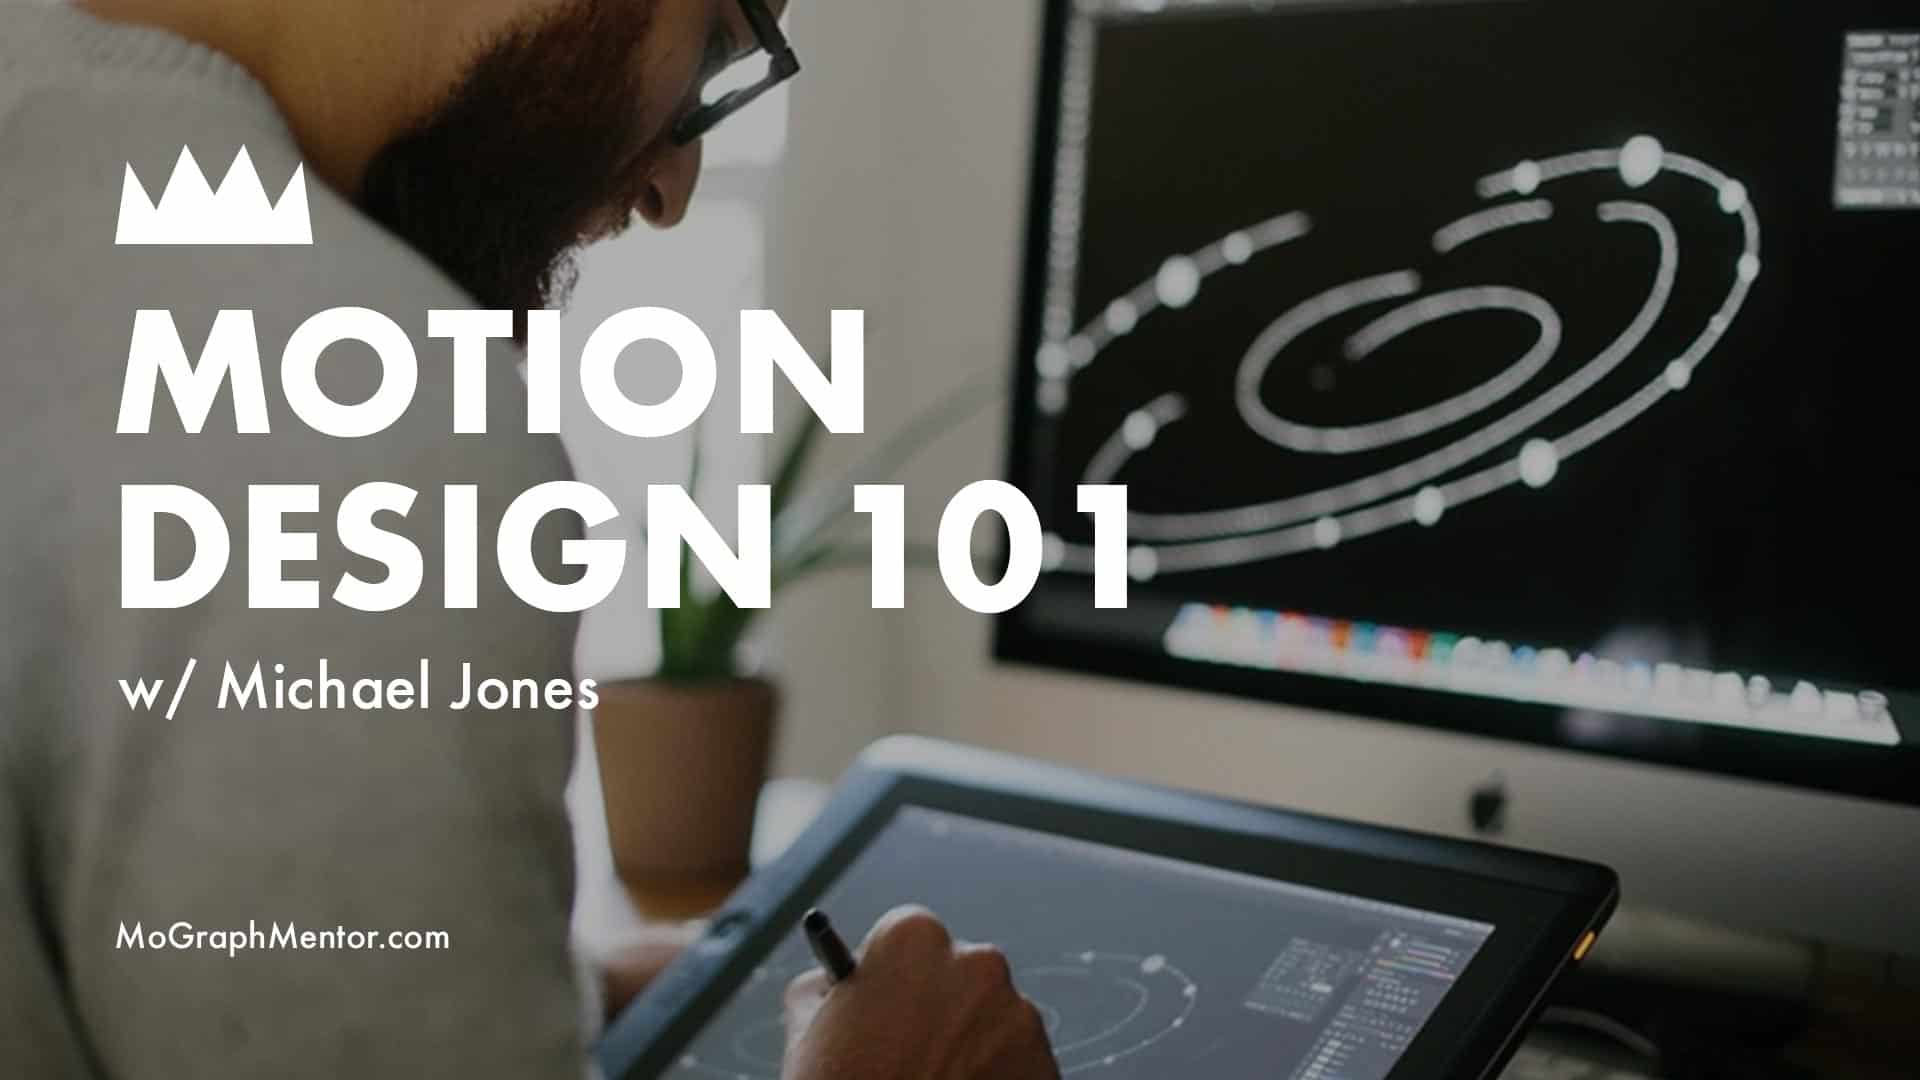 Michael Jones - Motion Design 101 : A Free Kickstart Guide